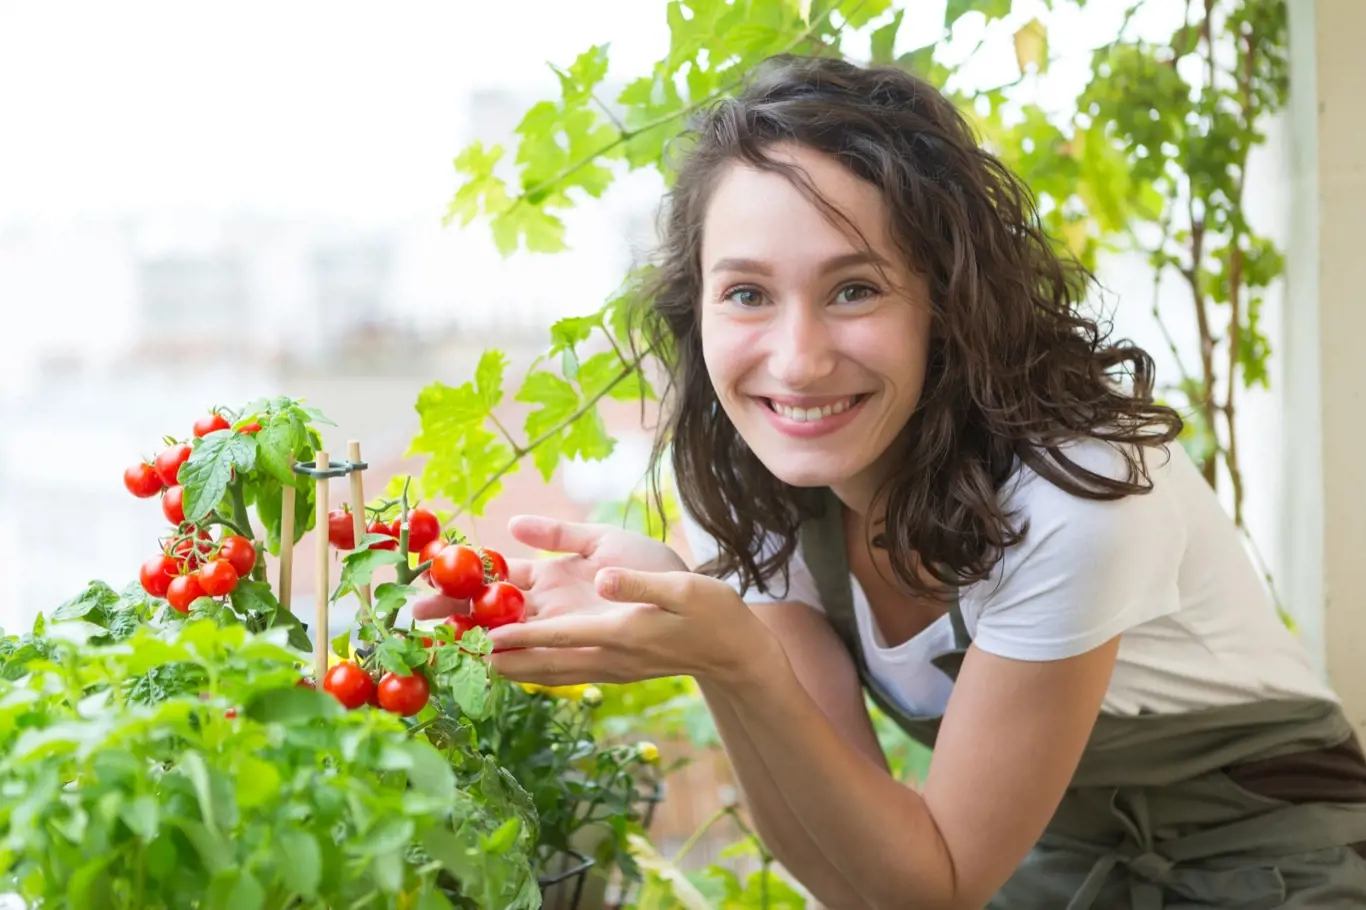 Kombinujte byliny s rajčaty a zjistěte si jak se rostliny vzájemně ovlivňují.